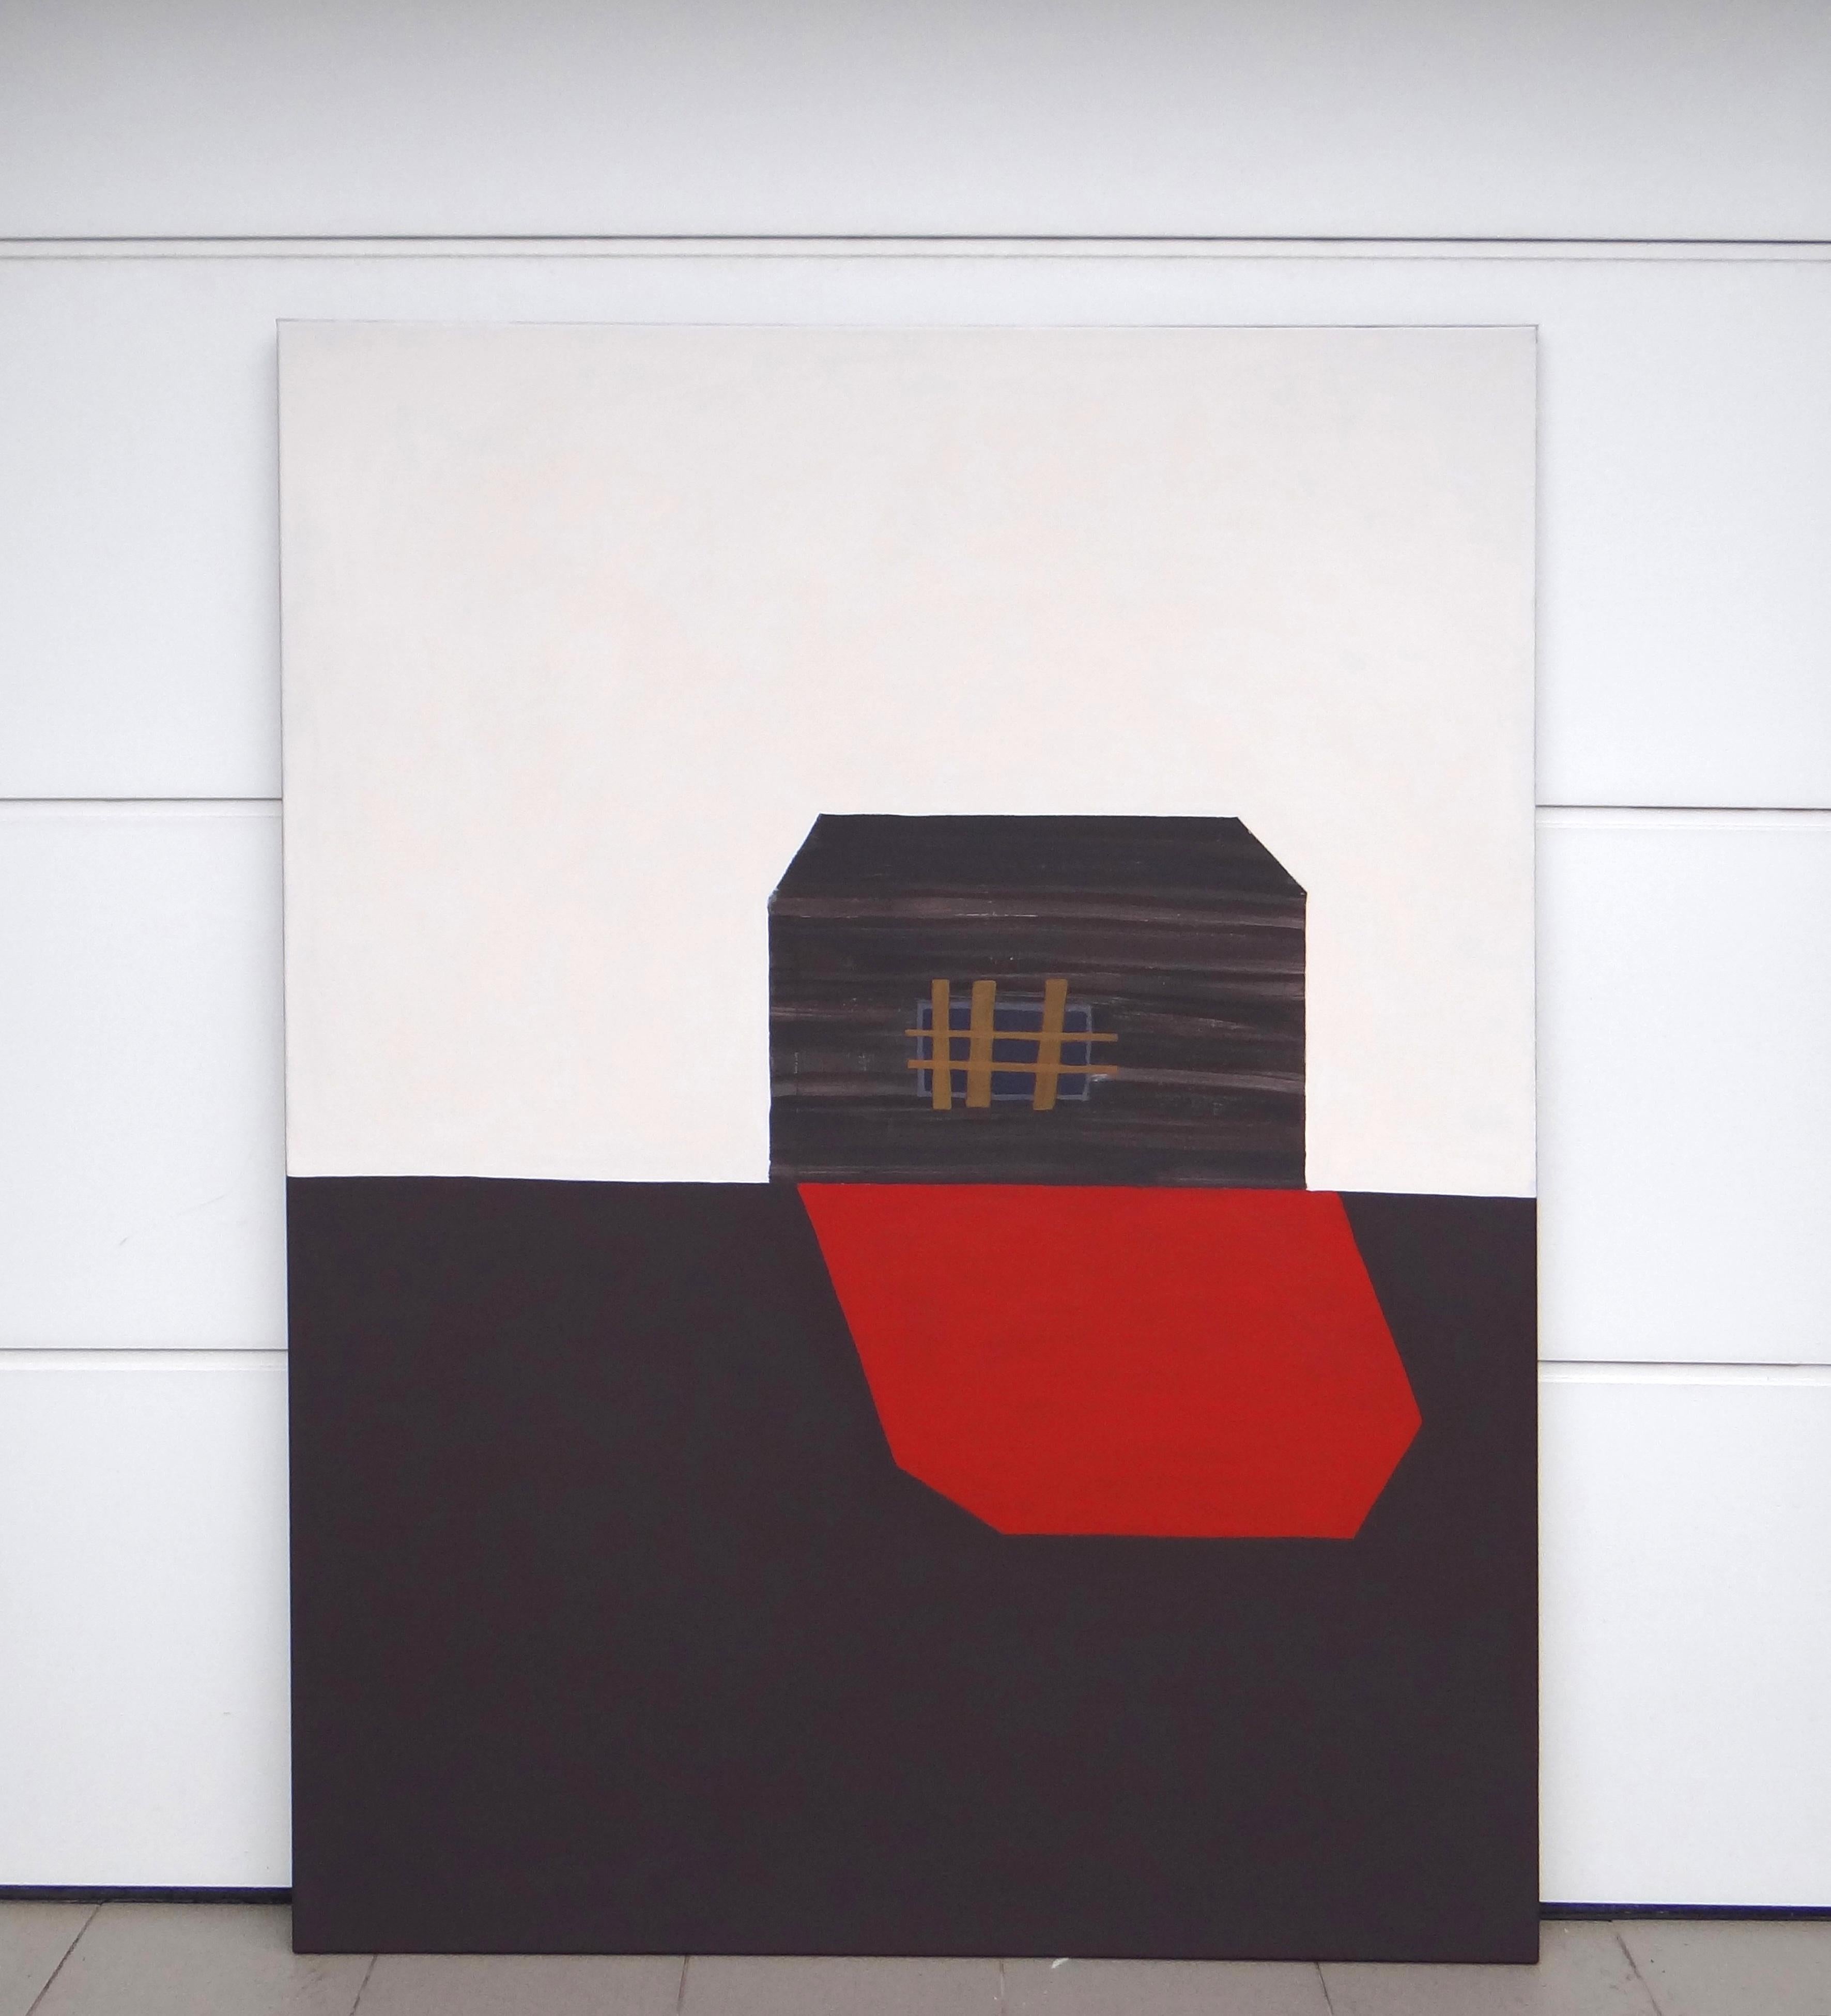 Roter Schatten  Modernes expressionistisches, minimalistisches Gemälde, großformatig (Zeitgenössisch), Painting, von Joanna Mrozowska